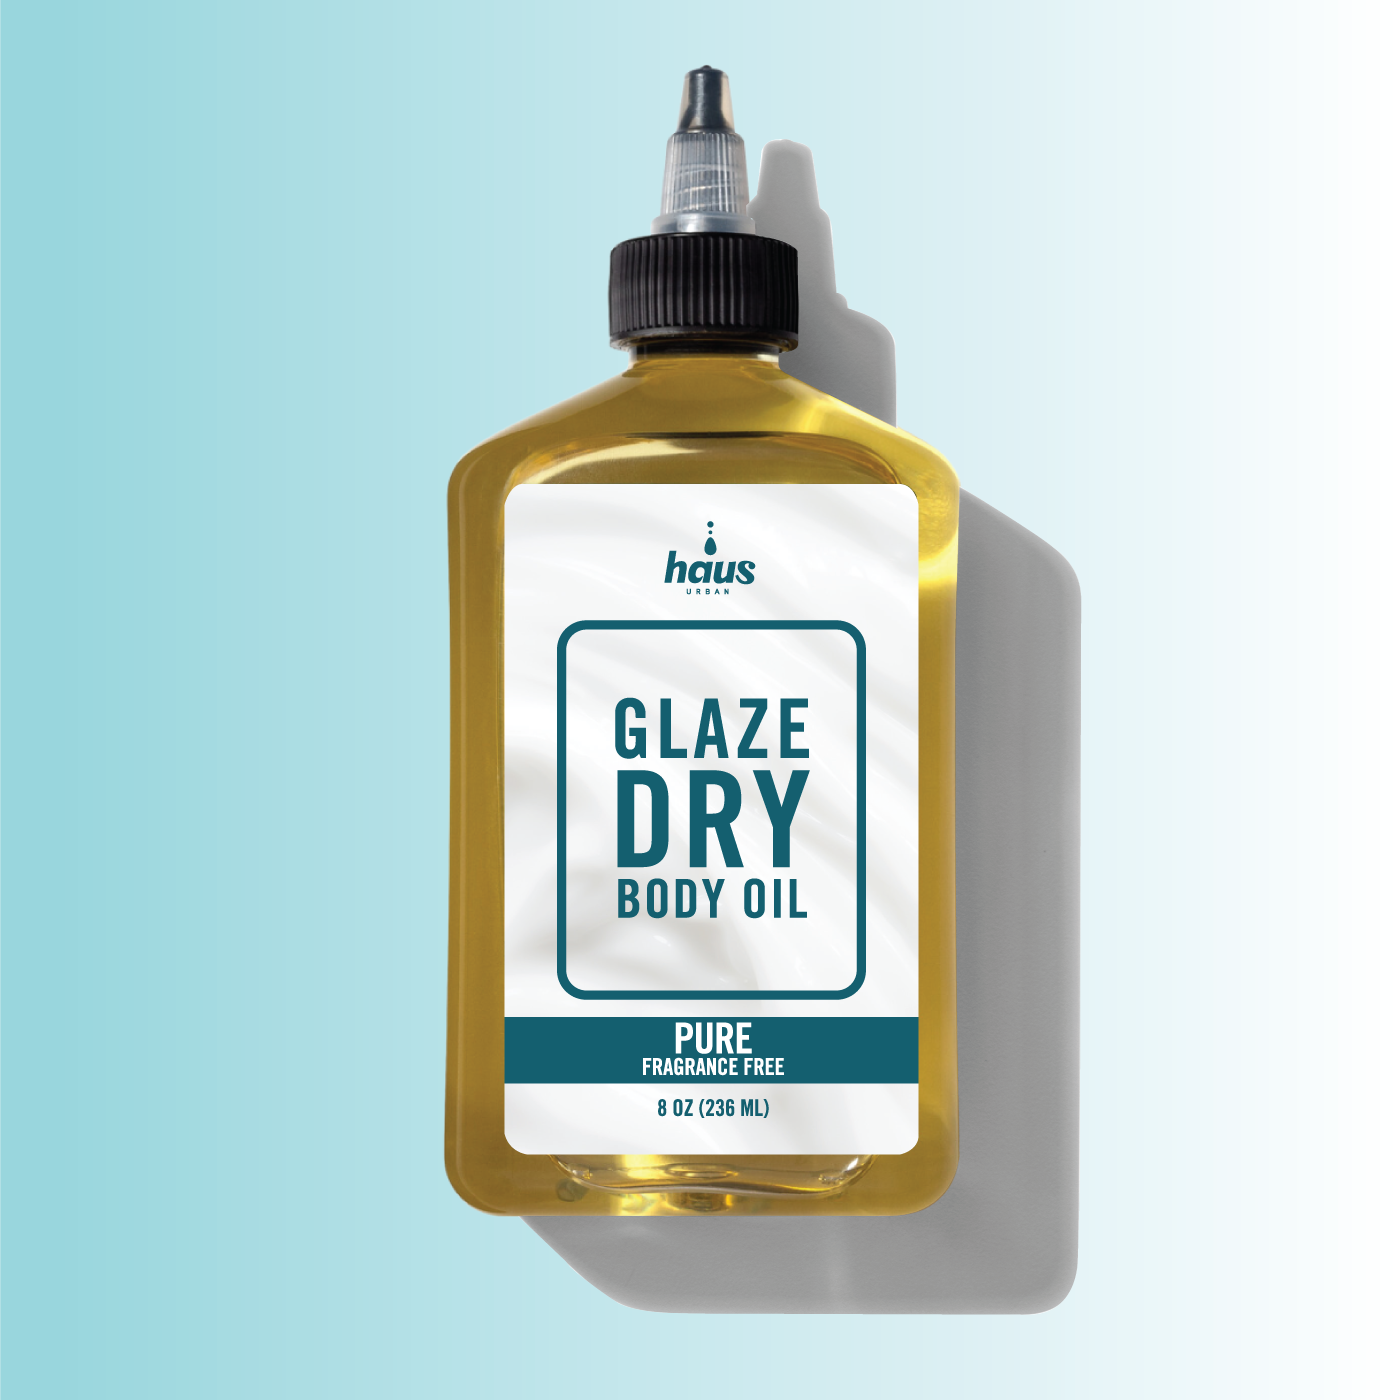 GLAZE | Dry Oil Blend for Body